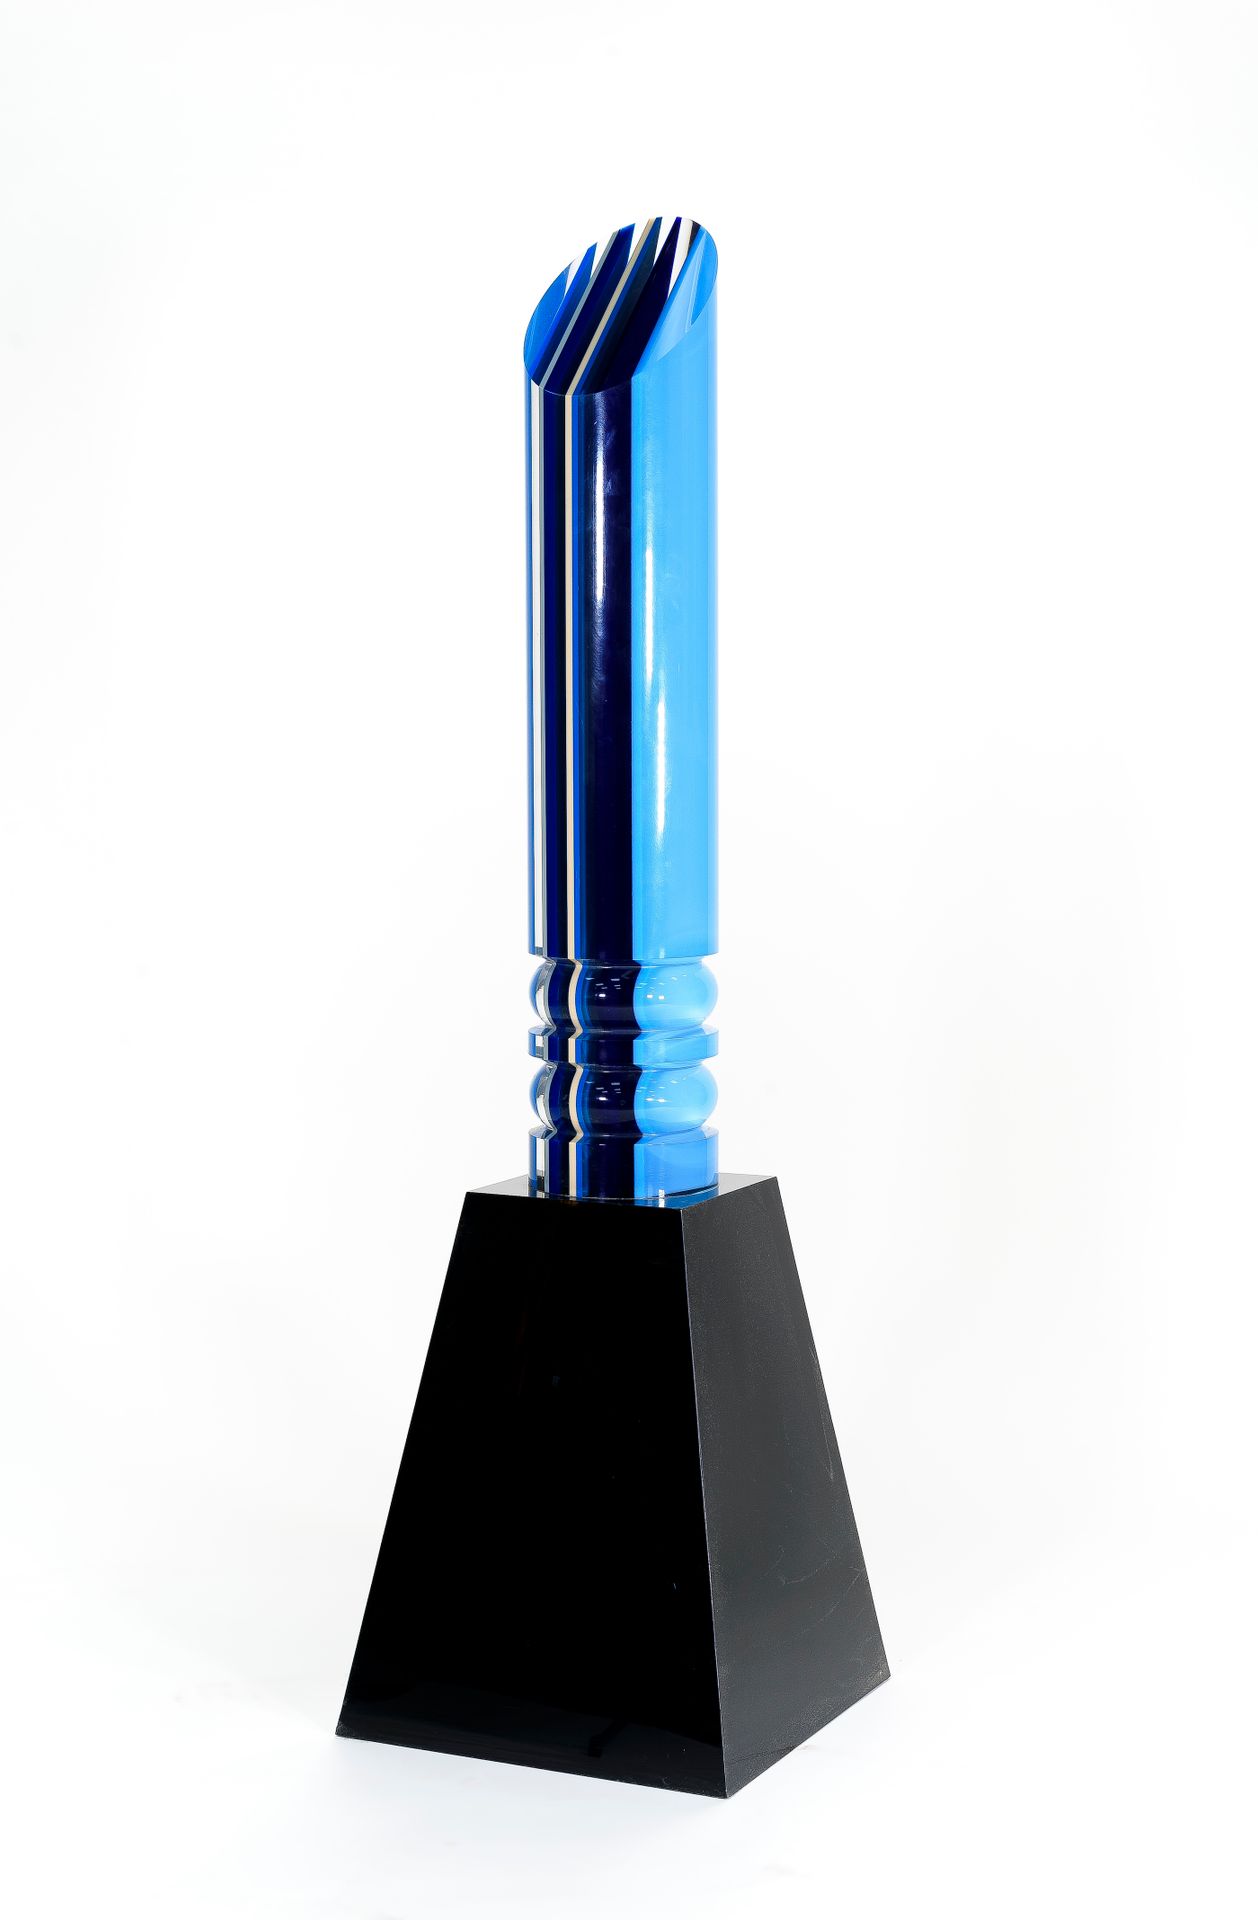 Null 让-克劳德-法尔希 (1940-2012)

蓝色斜面柱

乙烯基的聚甲基丙烯酸酯

在黑色的梯形底座上

高度：111厘米